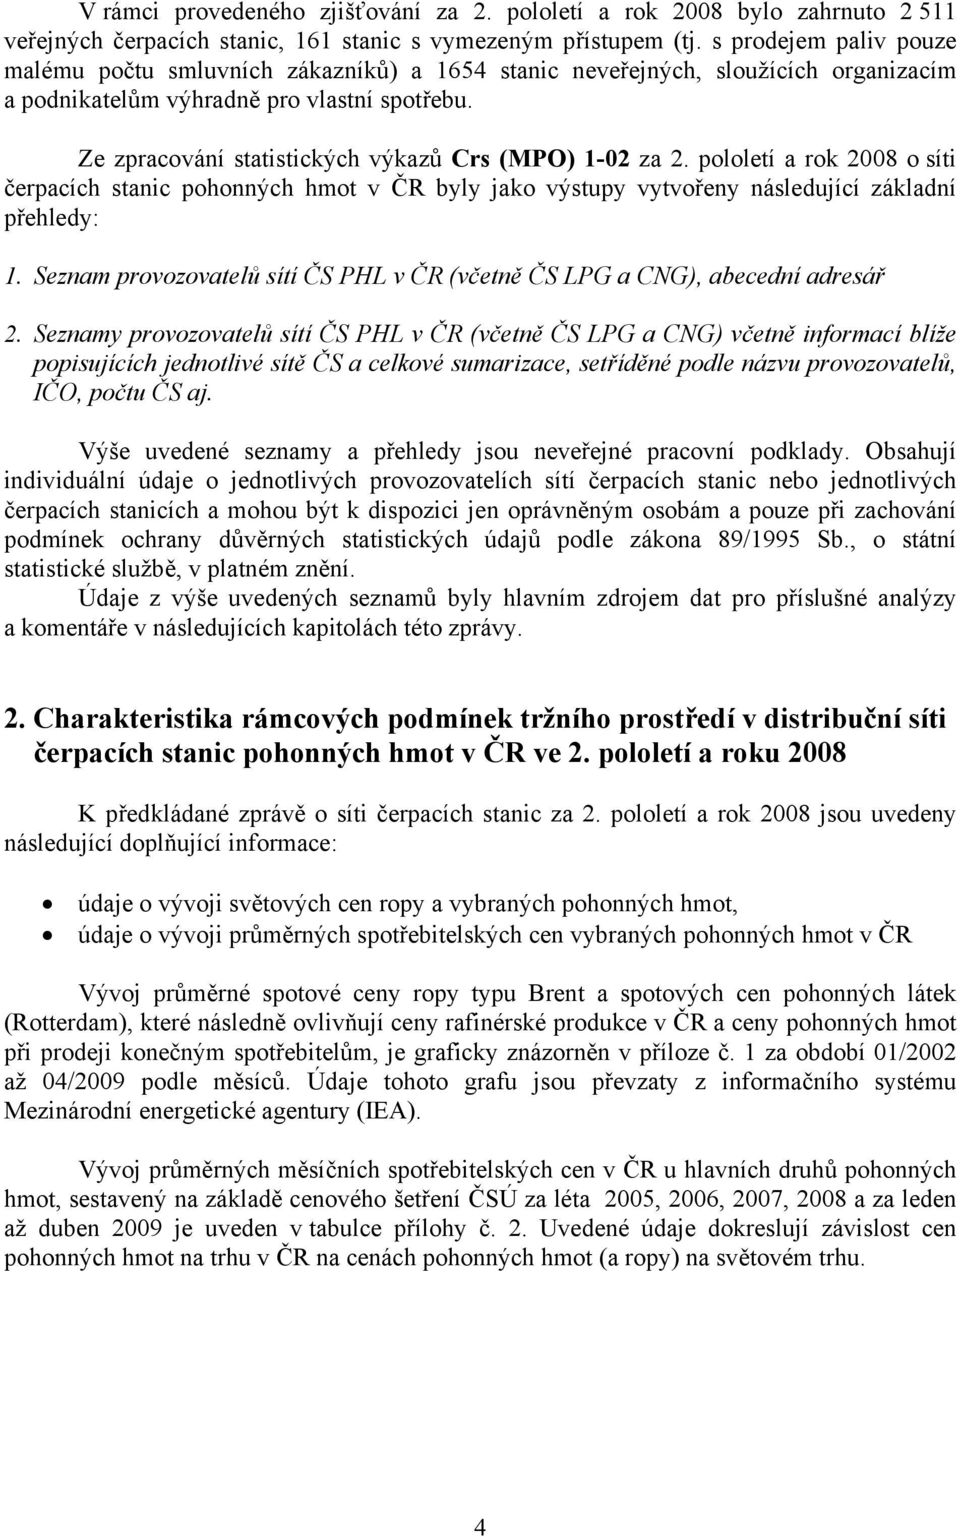 Ze zpracování statistických výkazů Crs (MPO) 1-02 za 2. pololetí a rok 2008 o síti čerpacích stanic pohonných hmot v ČR byly jako výstupy vytvořeny následující základní přehledy: 1.